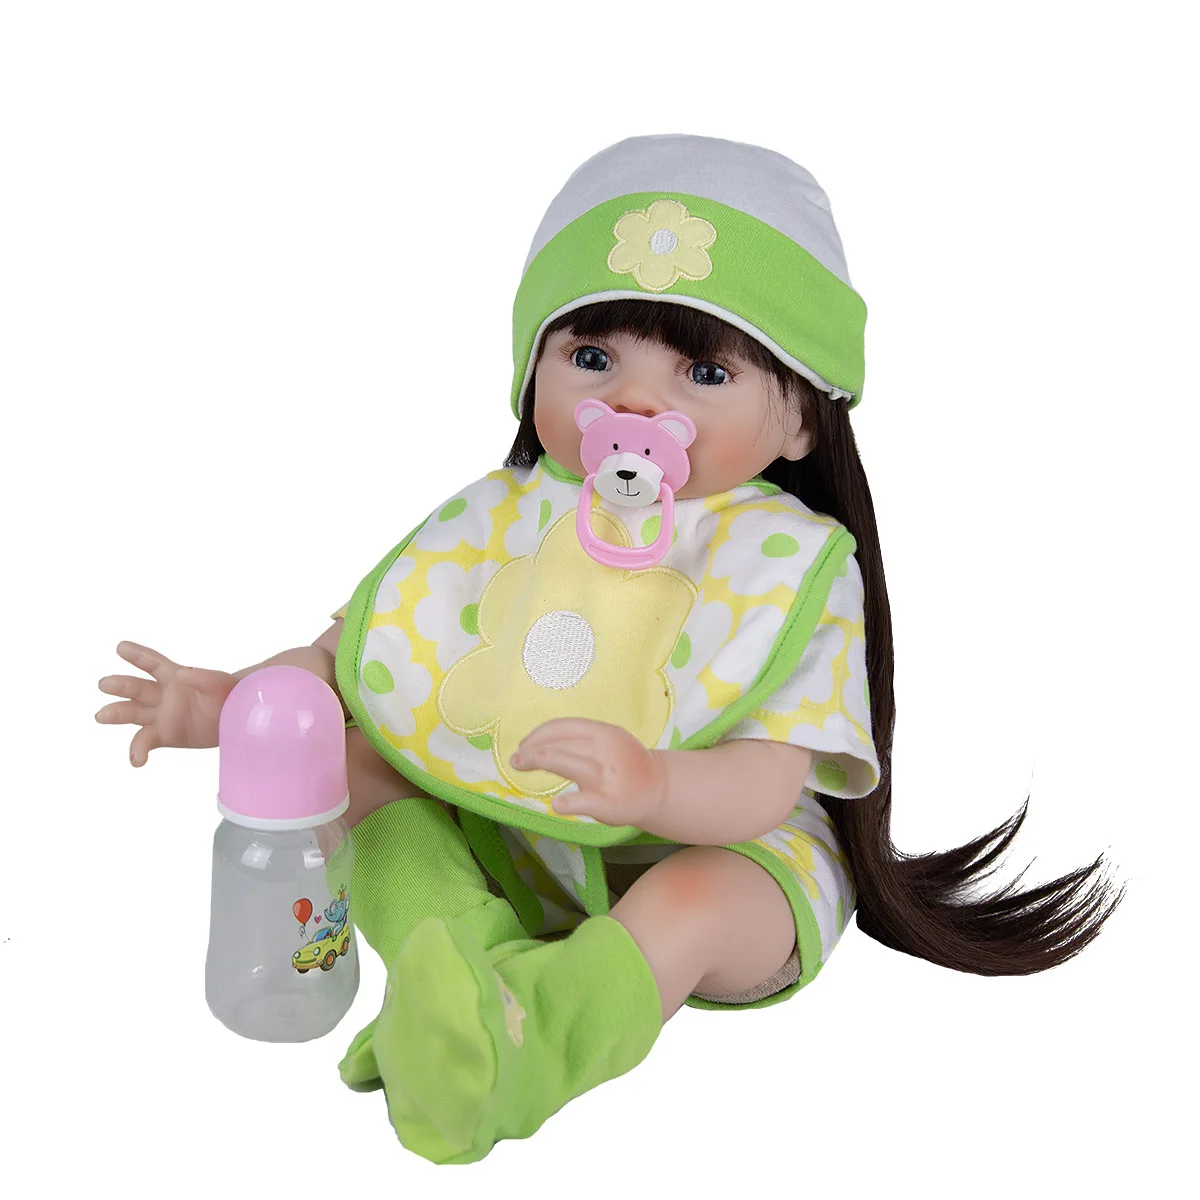 Dlhé Účesy 55 Cm Batoľa Reborn Baby Doll Odbavenie Látkové Telo Dievča Reborn Baby Doll Playmates Hračka Pre Deti, Deň Dary 1